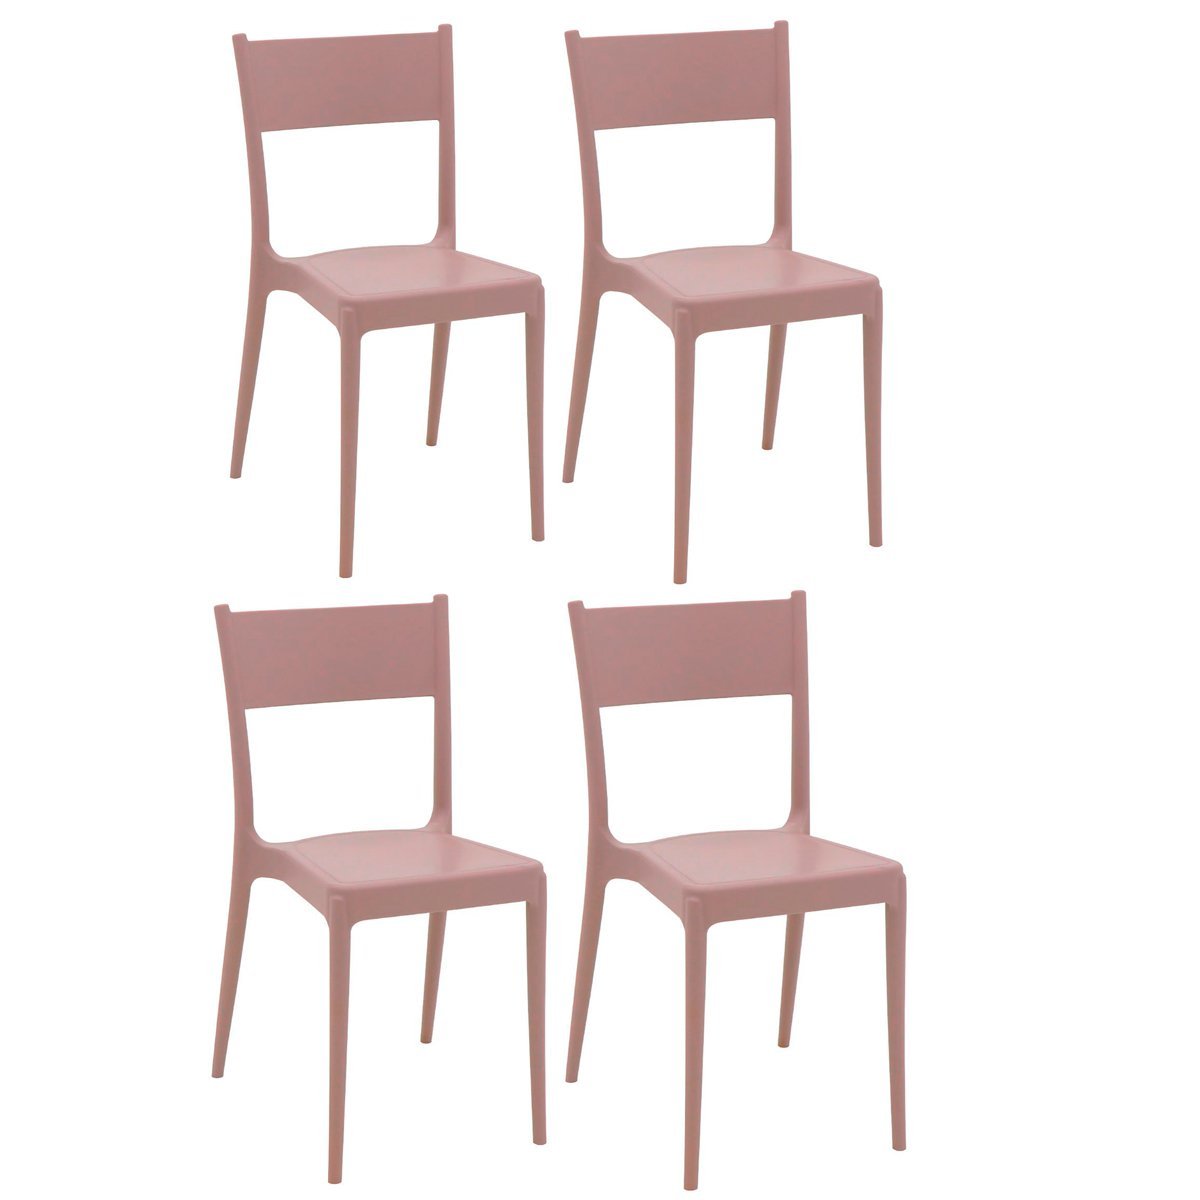 Conjunto 4 Cadeiras de Polipropileno e Fibra de Vidro Summa Eco Diana - Tramontina - Camurça 92030/4 - 1